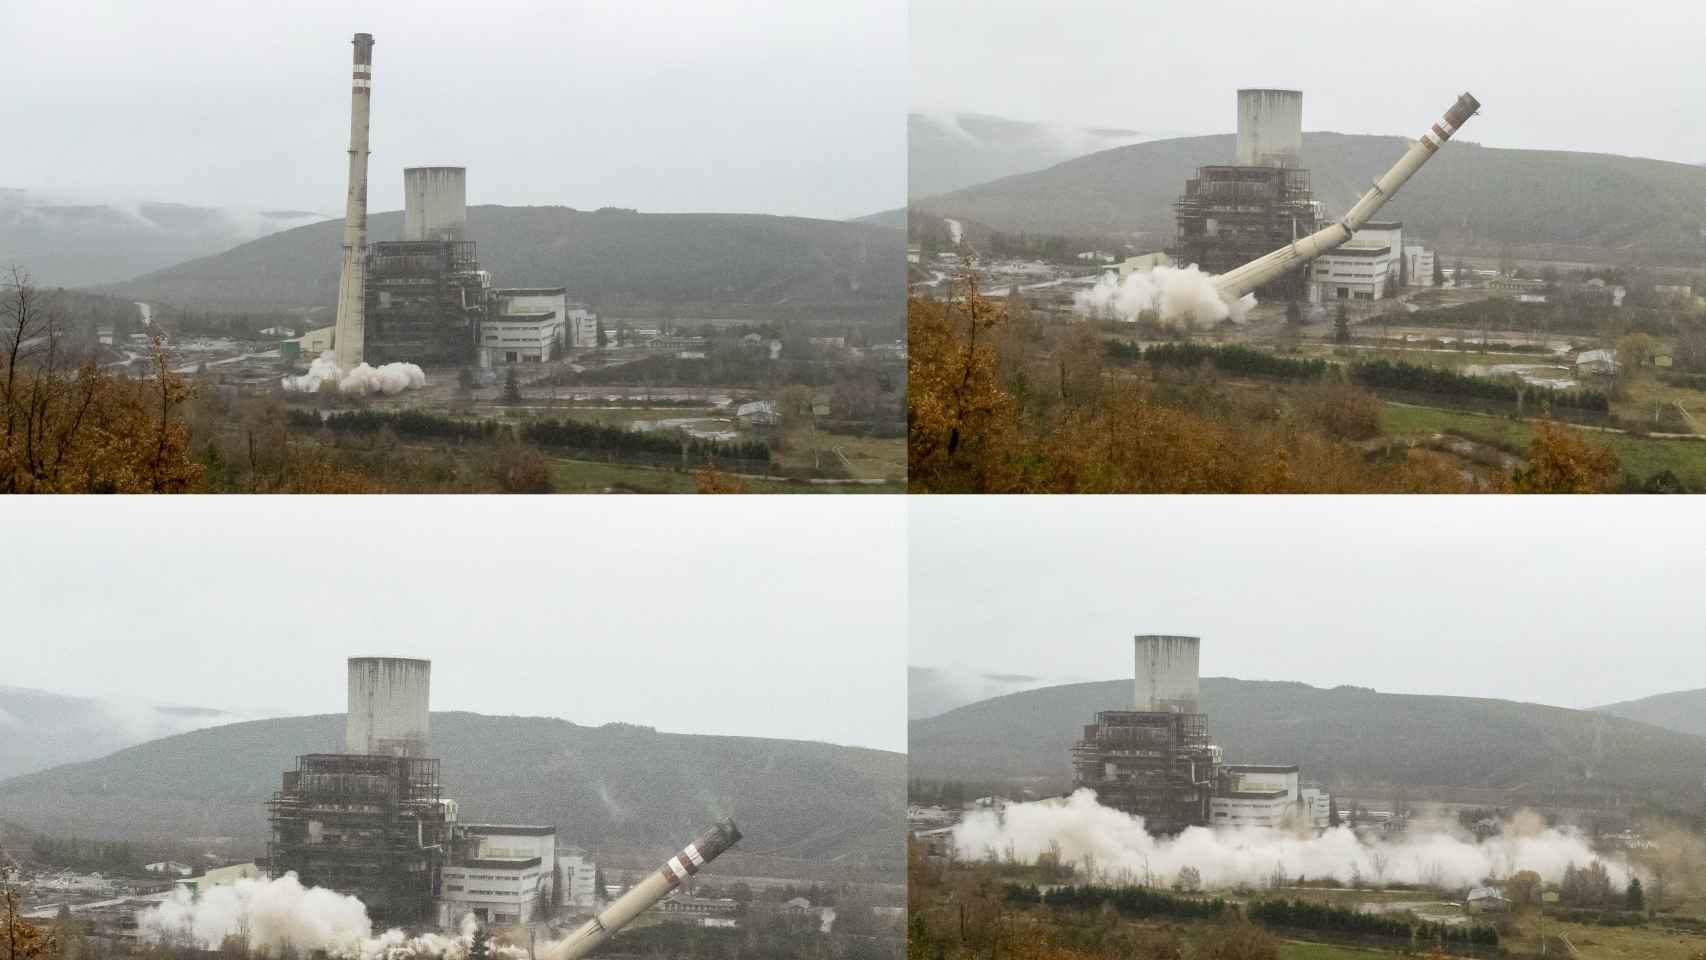 Impresionantes imágenes de la demolición de la chimenea de la central térmica de Anllares 8